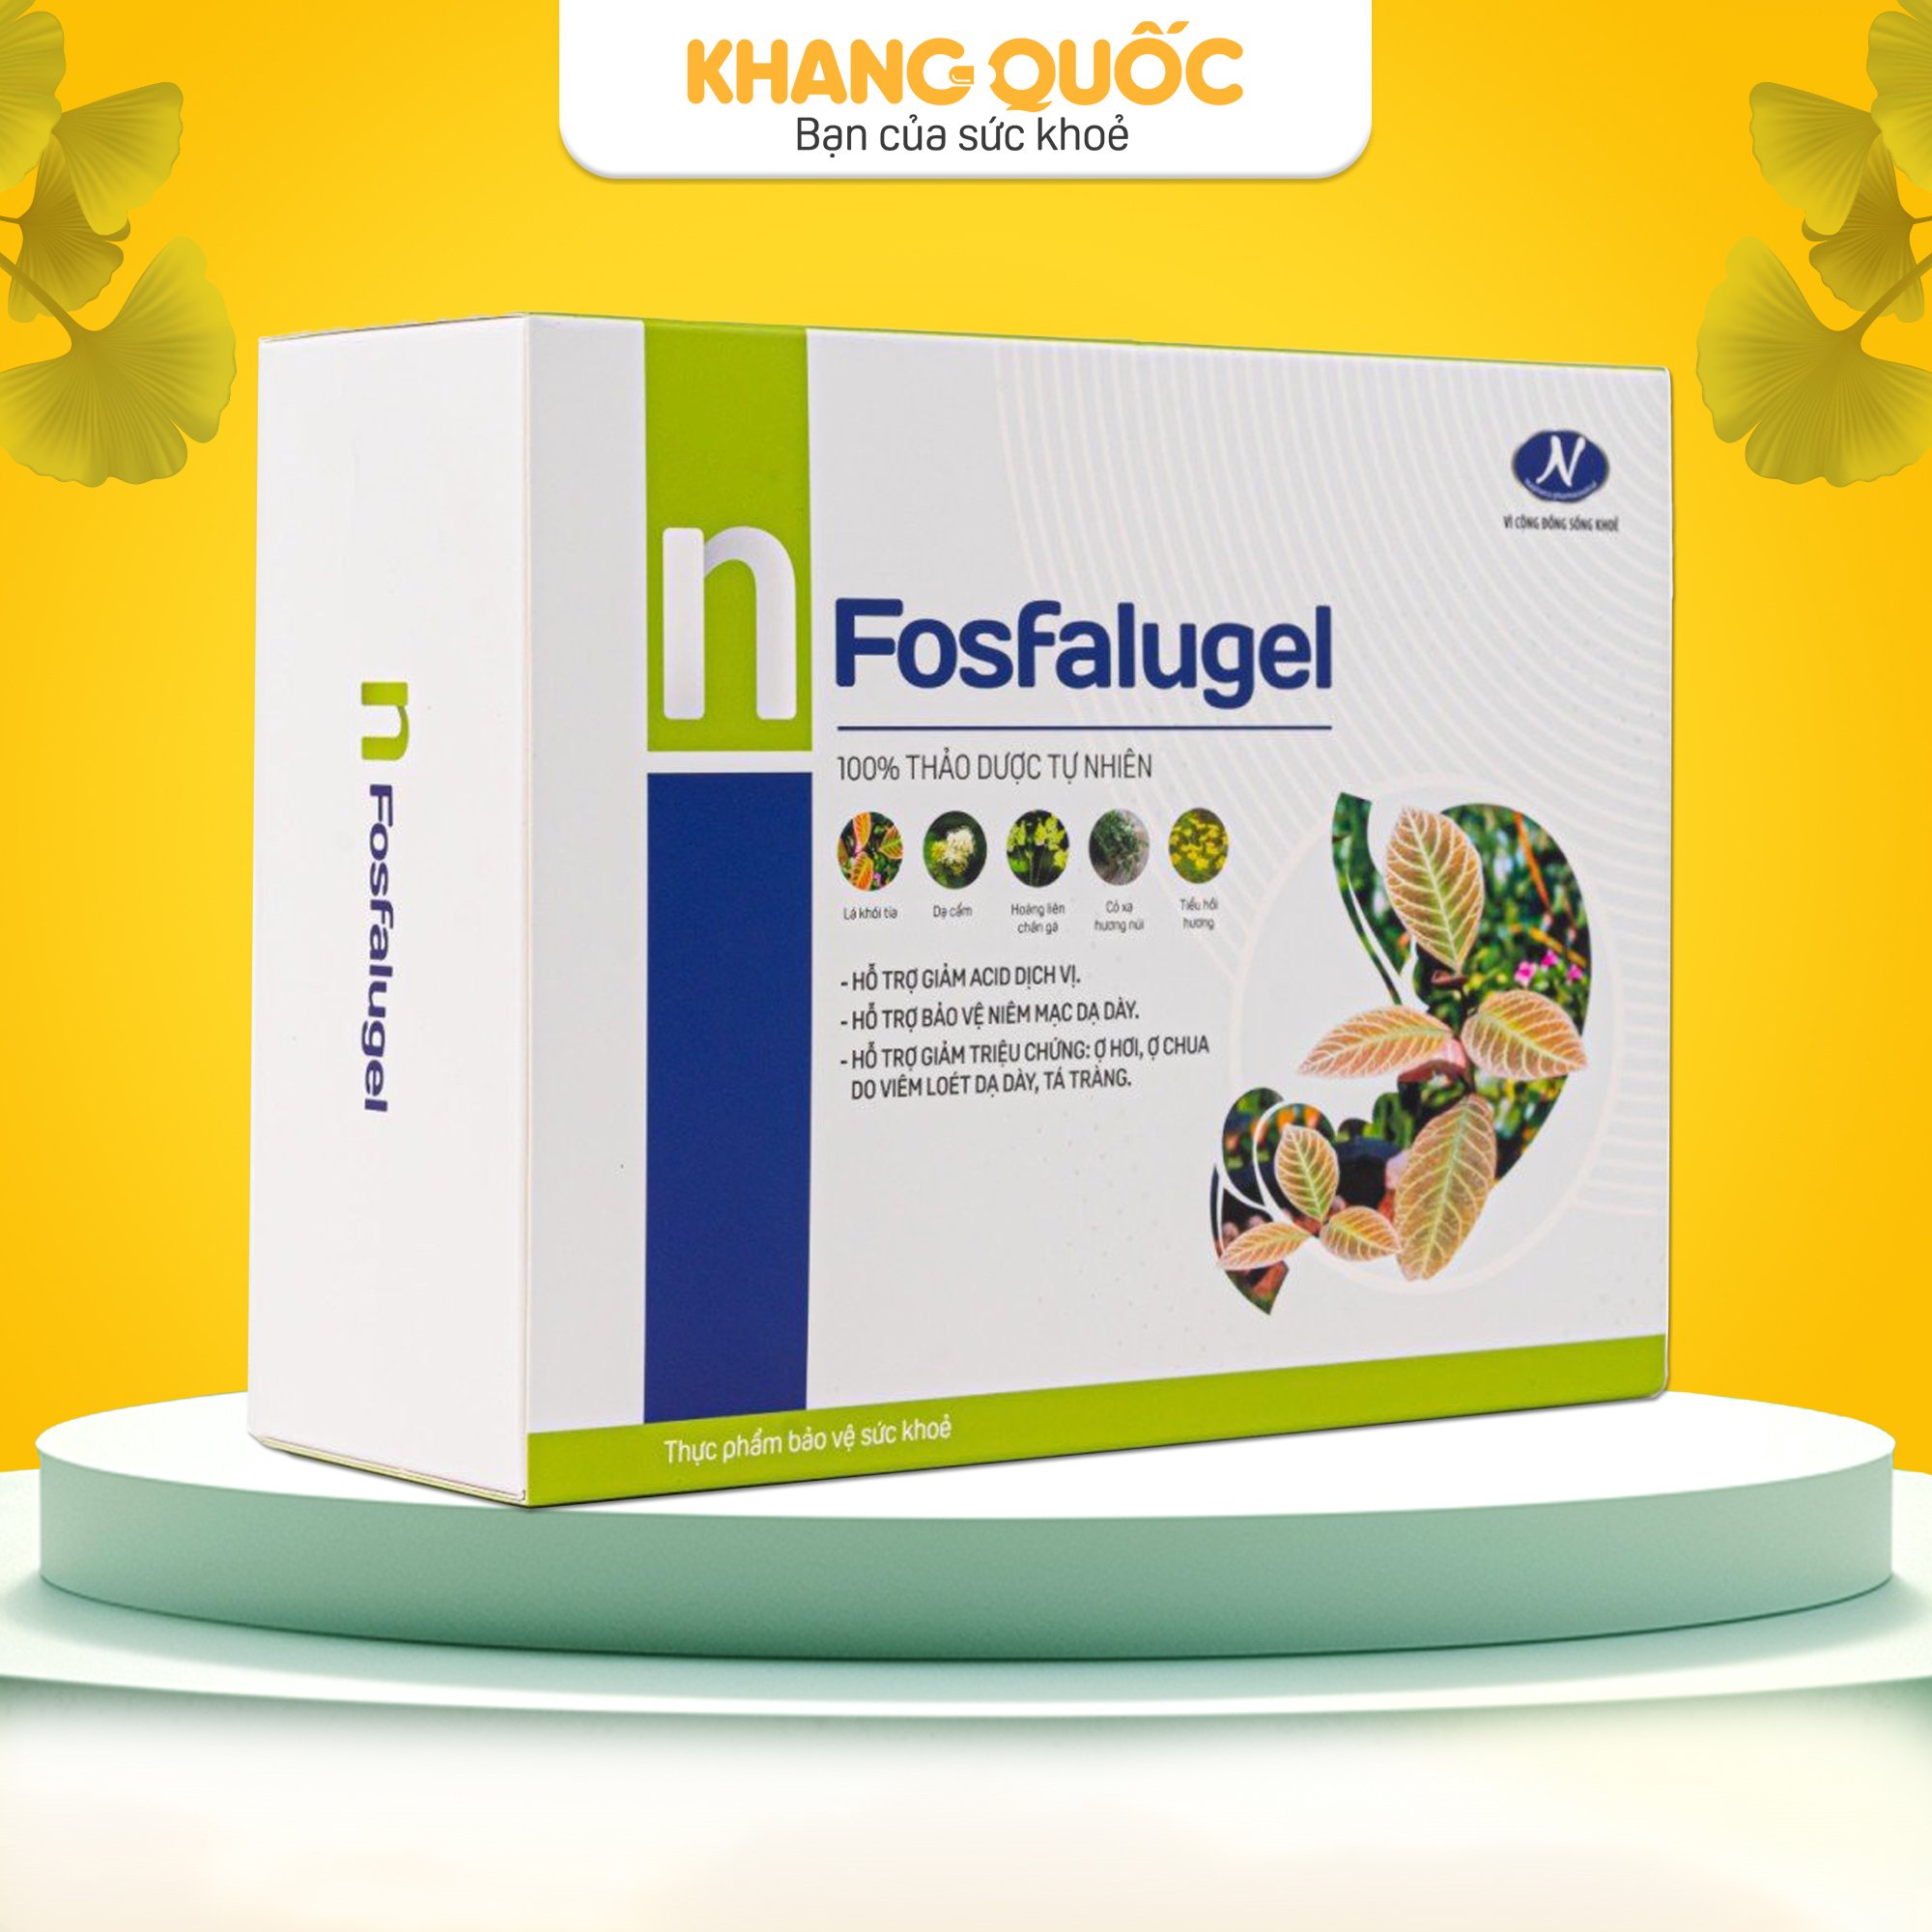 Fosfalugel - Sản phẩm hỗ trợ giảm đau dạ dày